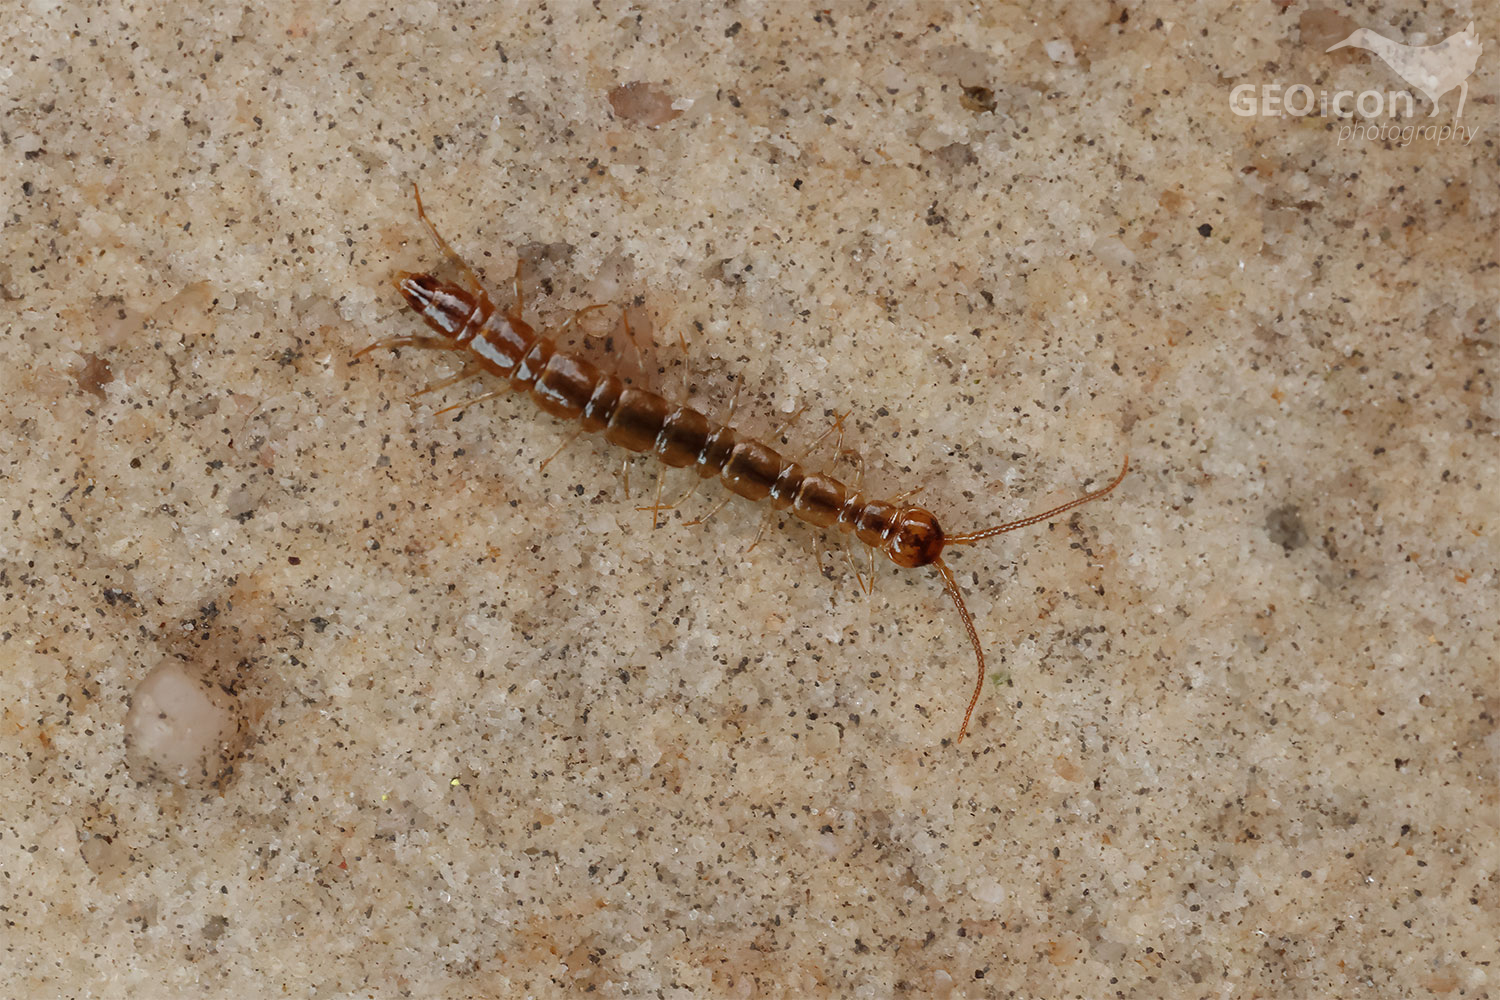 Common centipede / stonožka škvorová (Lithobius forficatus) 